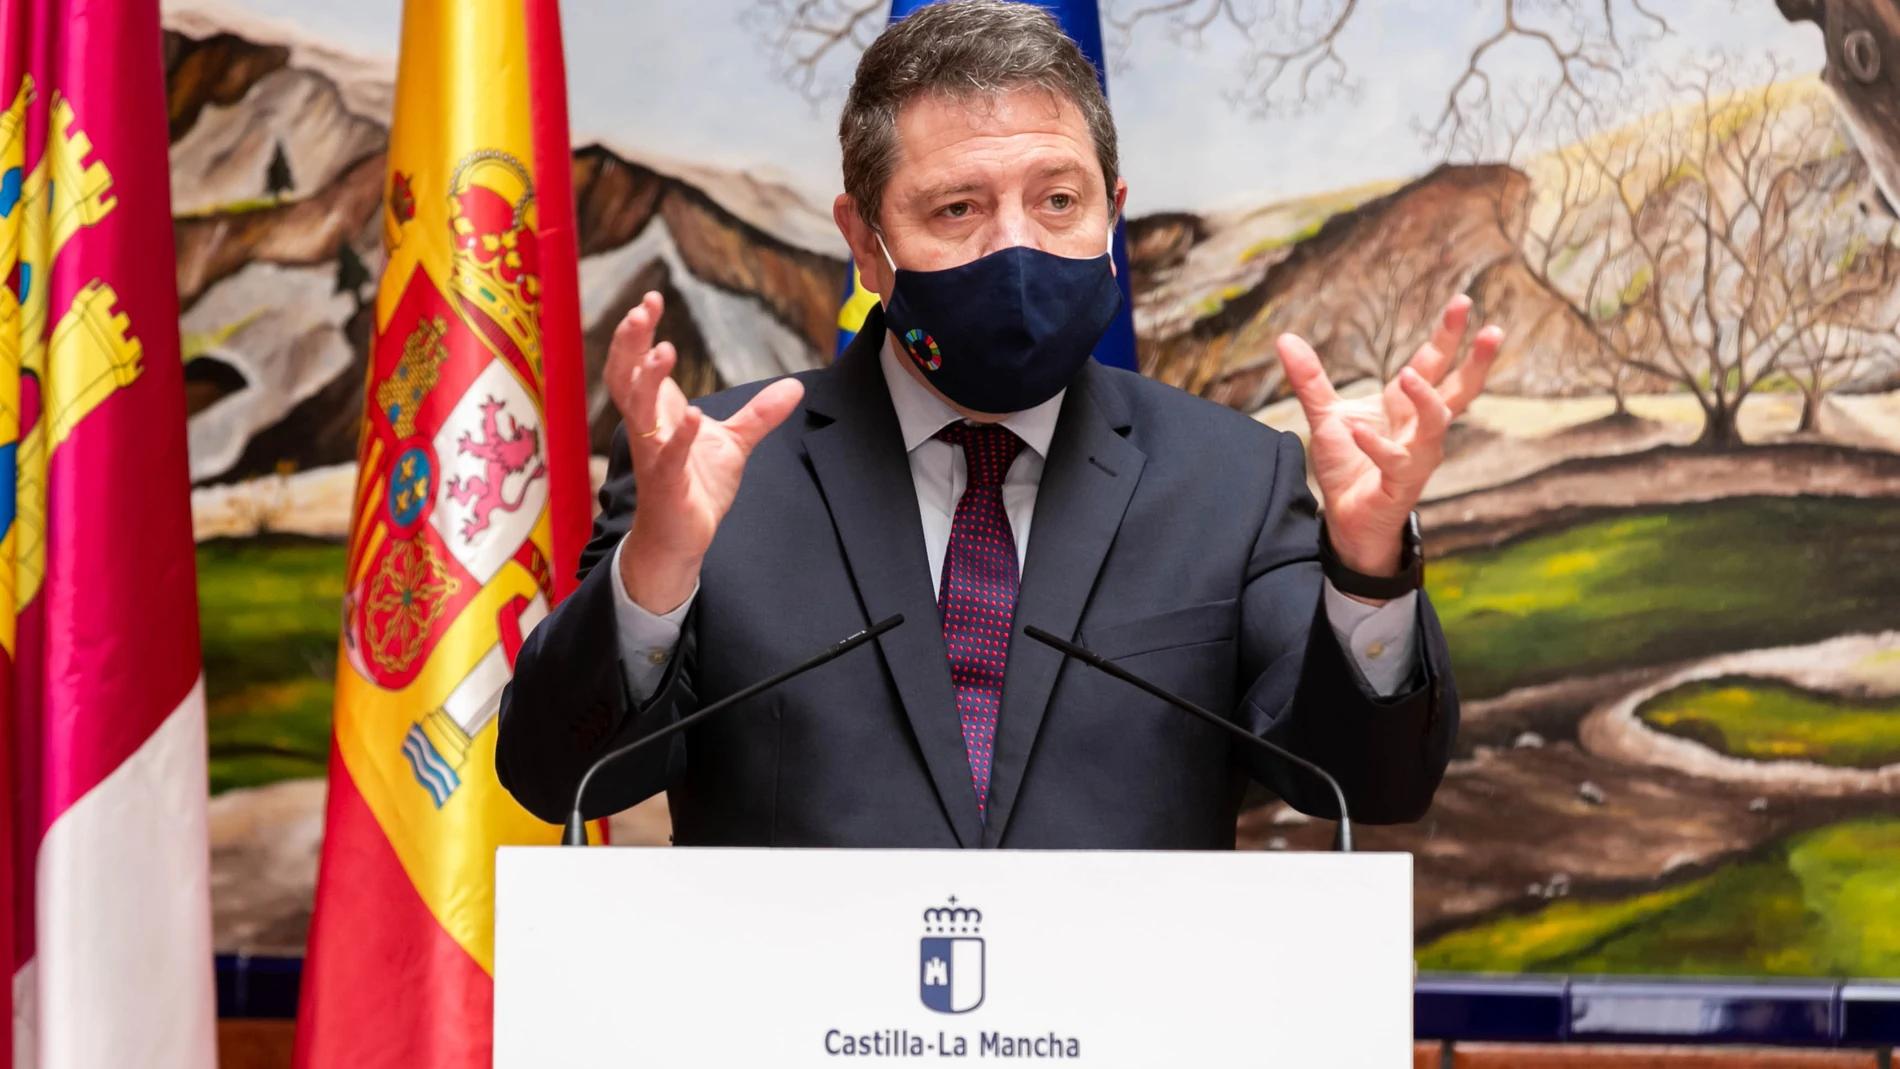 El jefe del Ejecutivo de Castilla-La Mancha, Emiliano García-Page, durante la firma de un convenio de colaboración entre el Gobierno regional y la Diputación provincial de Albacete